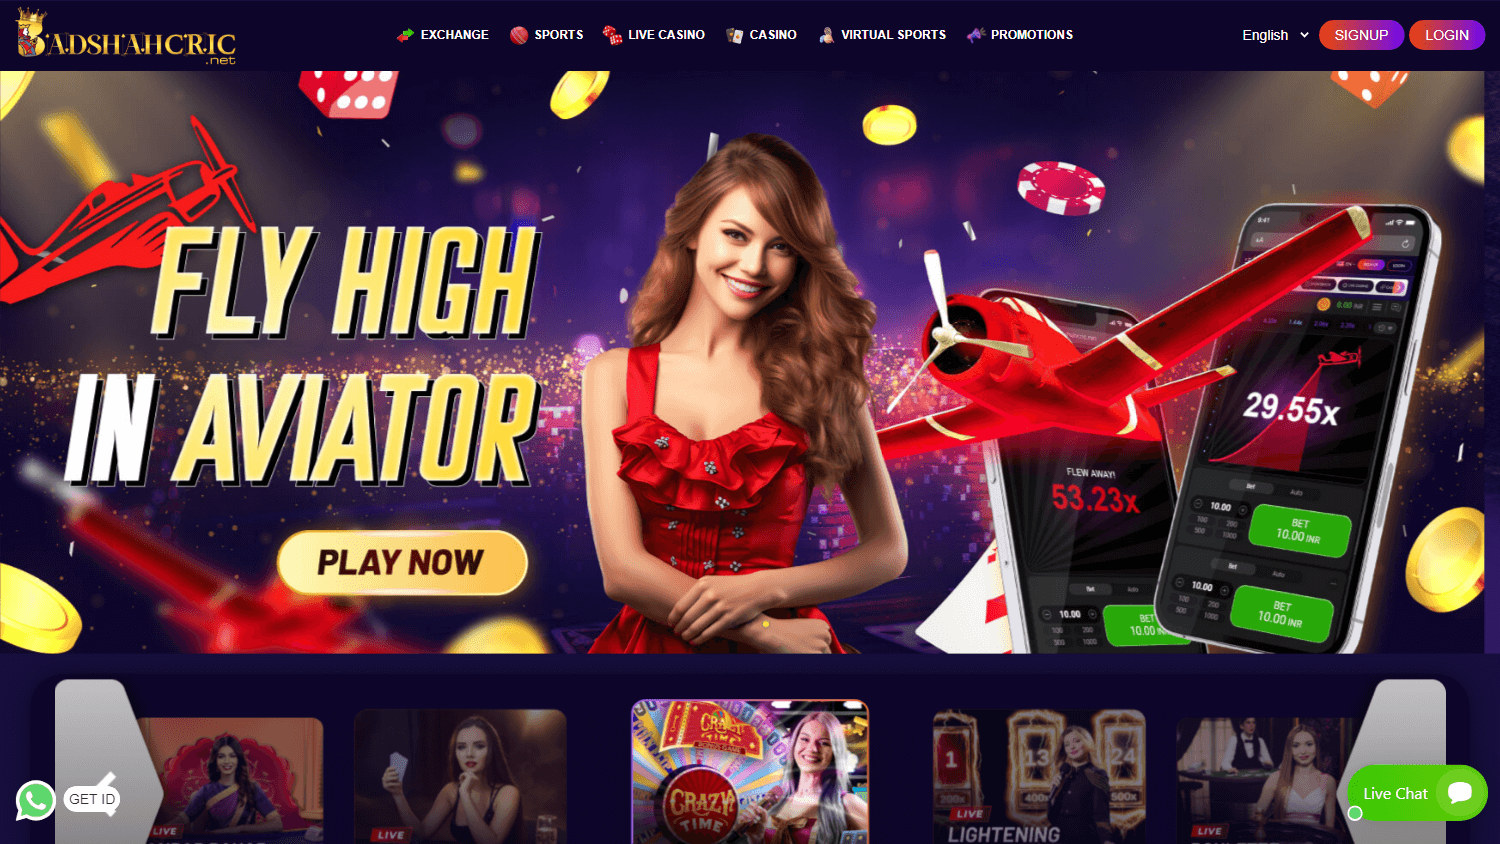 badshahcric_casino_homepage_desktop